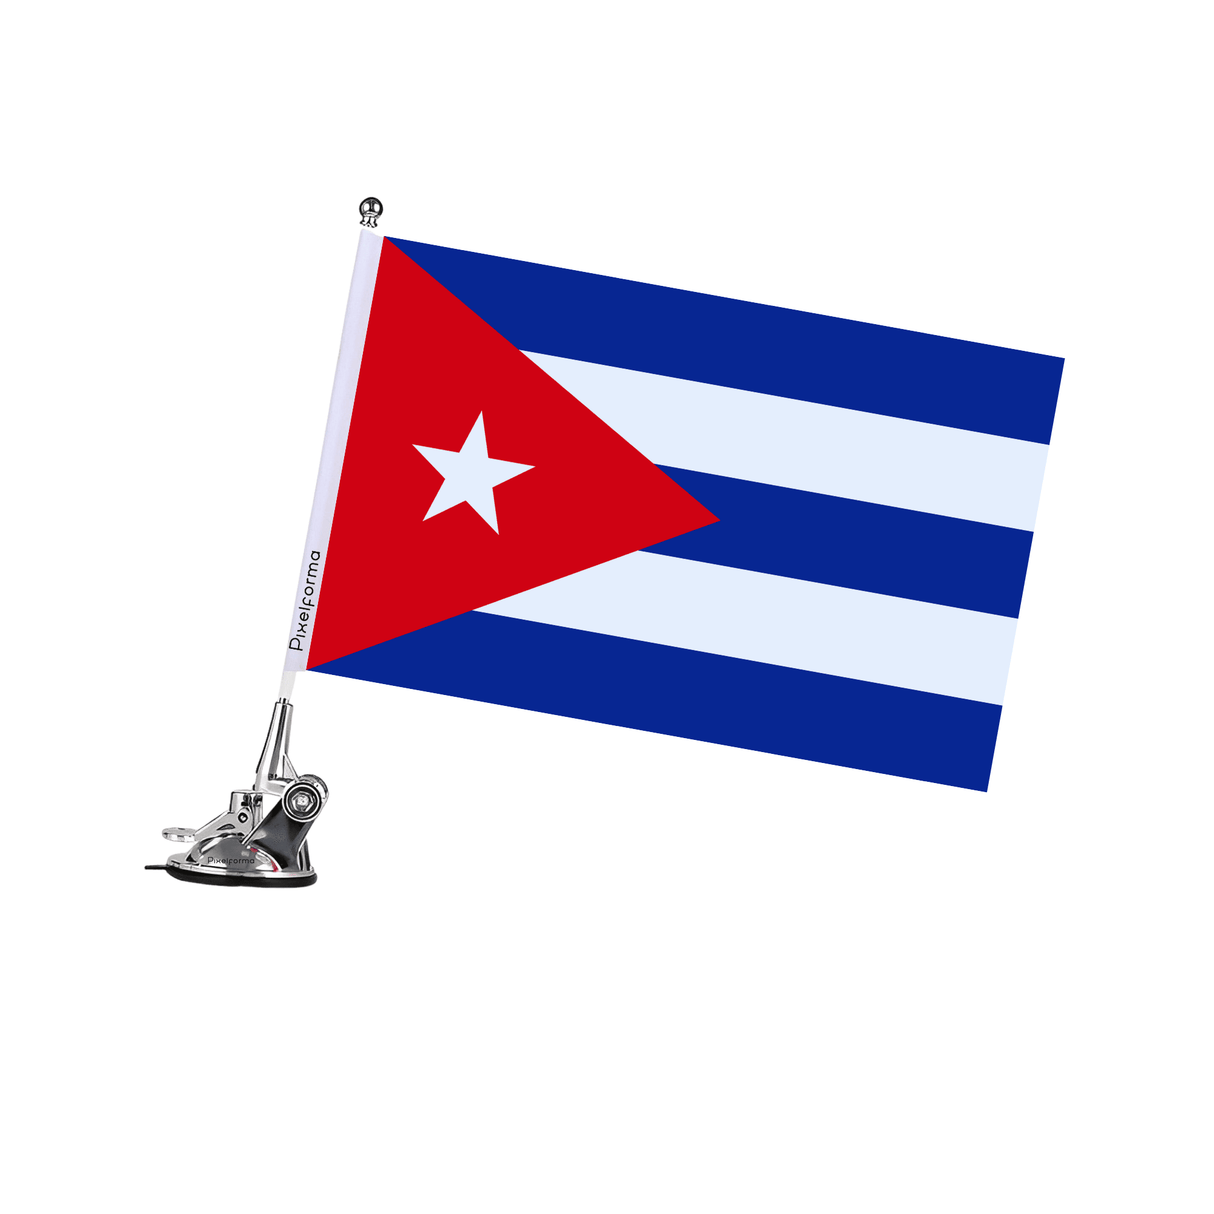 Mât à Ventouse Drapeau de Cuba - Pixelforma 